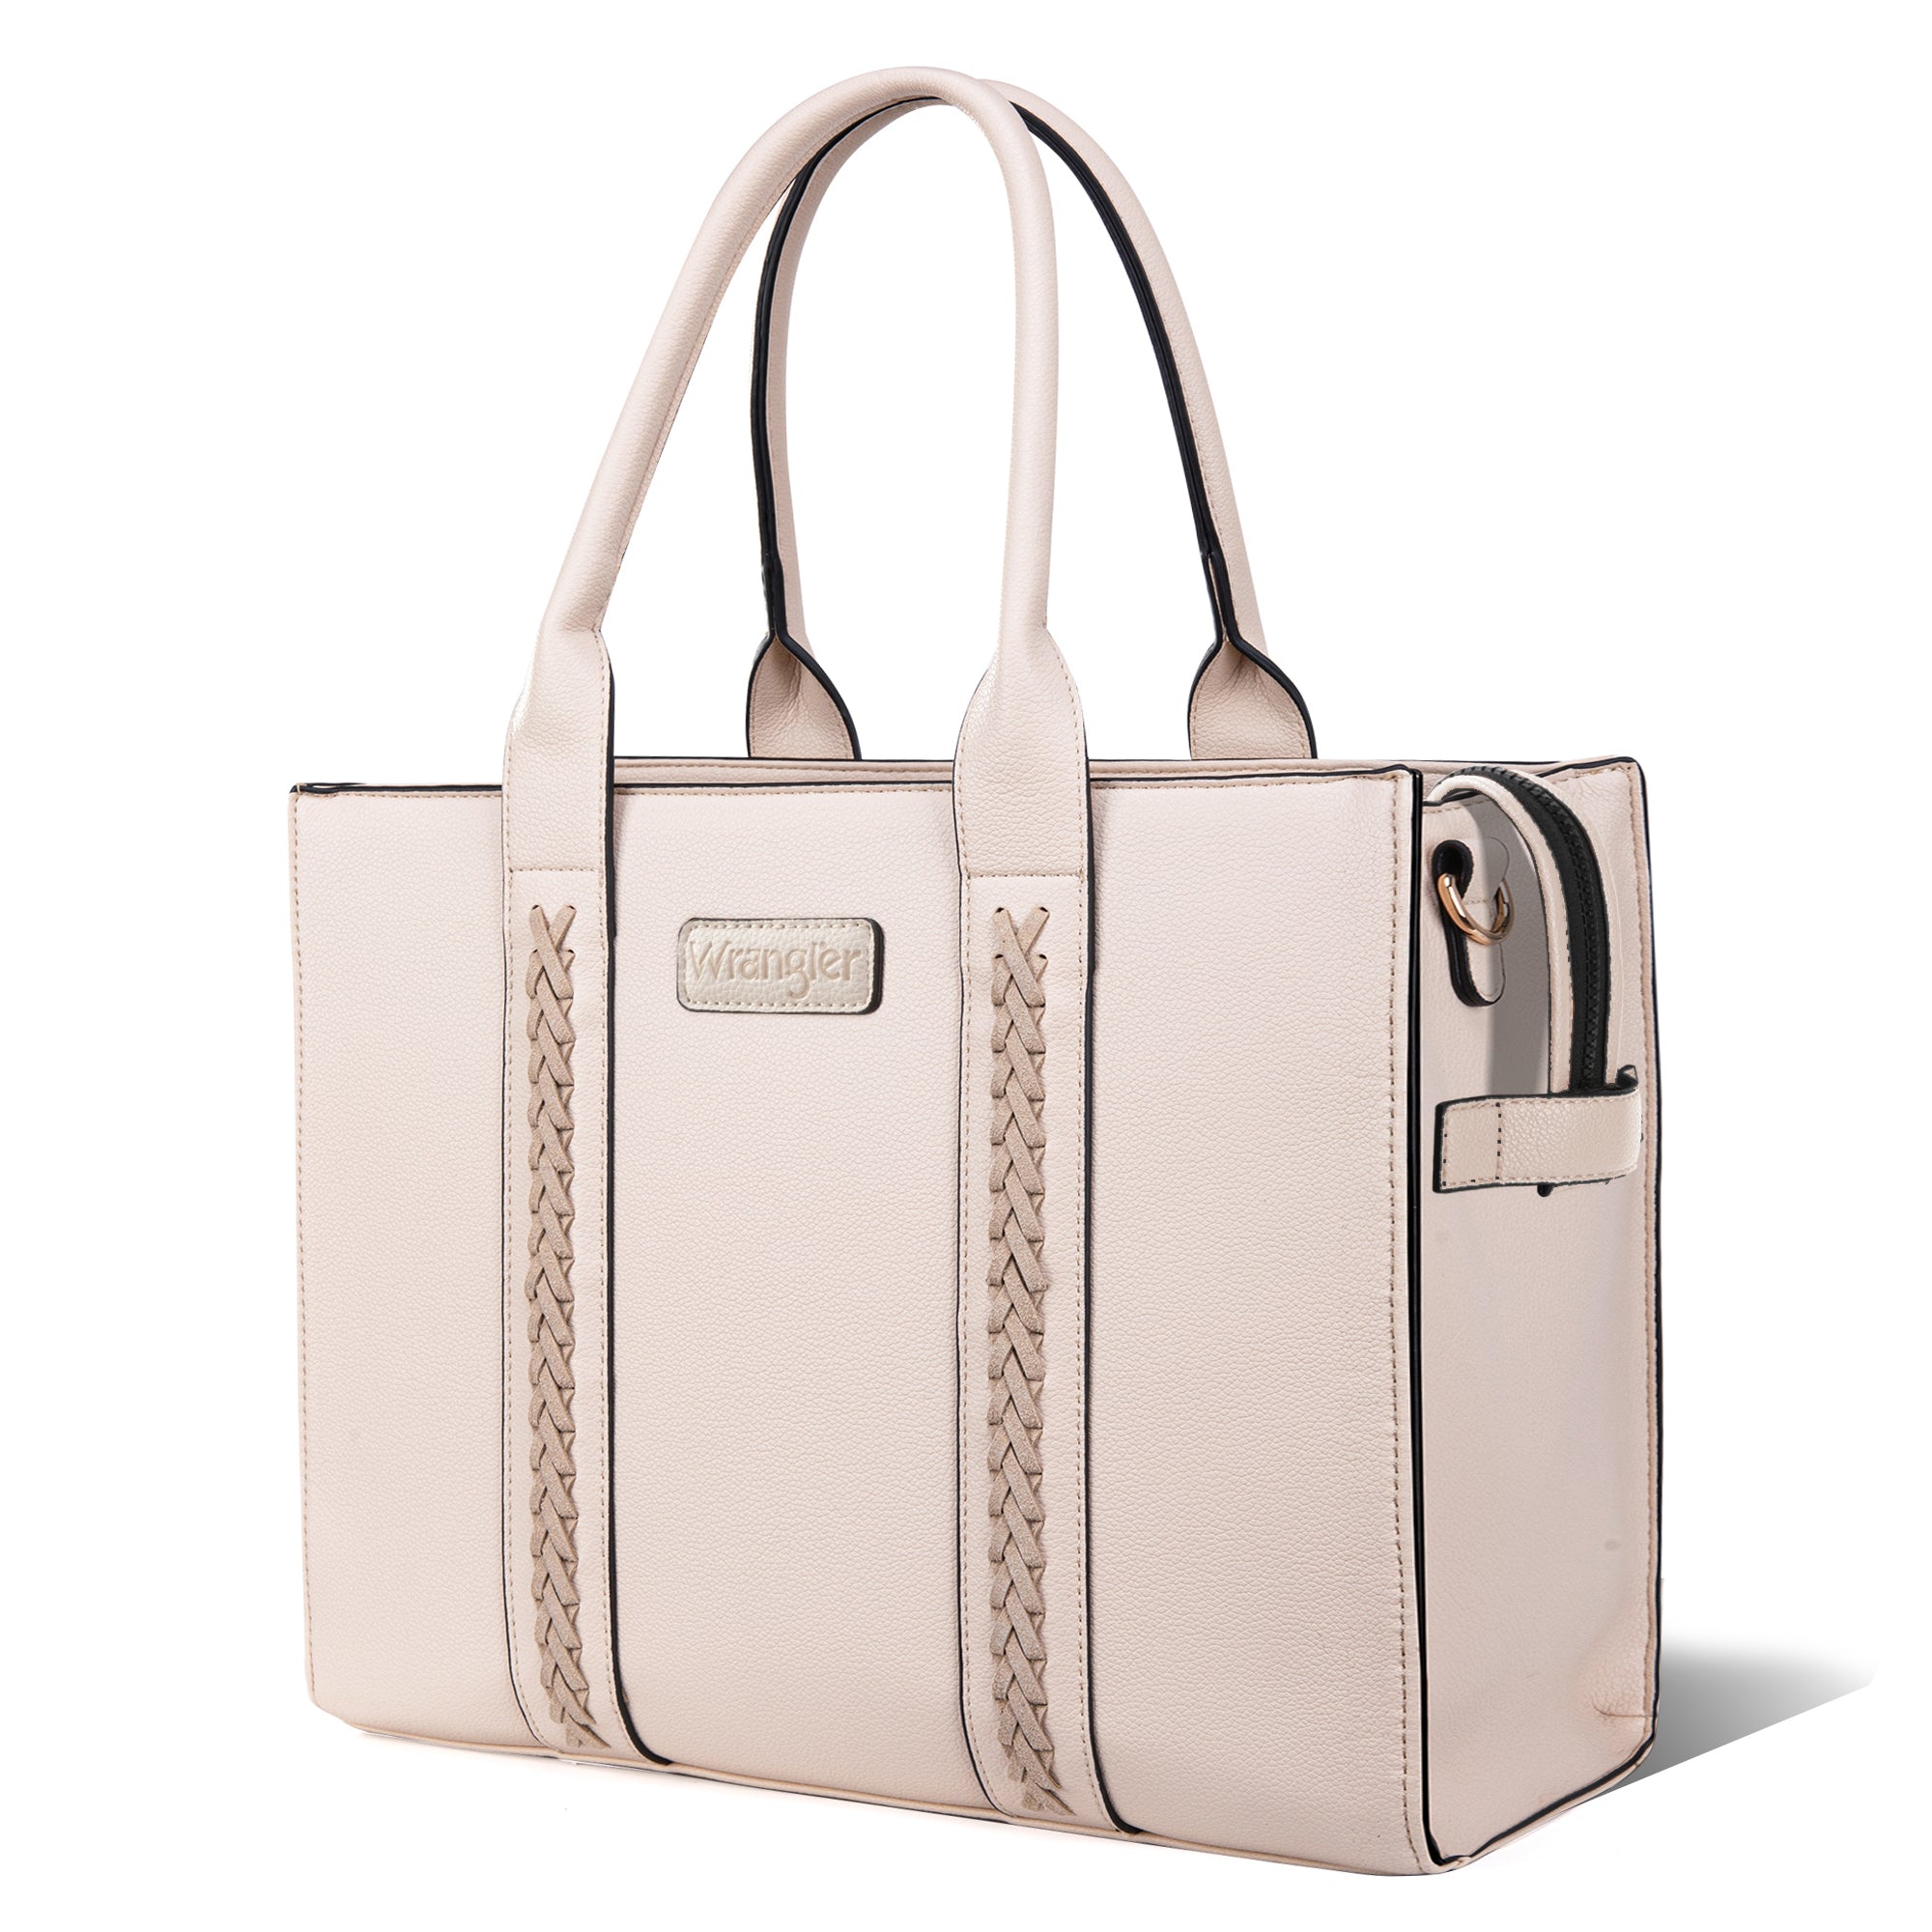 Zipper Tan Handbags, Bags